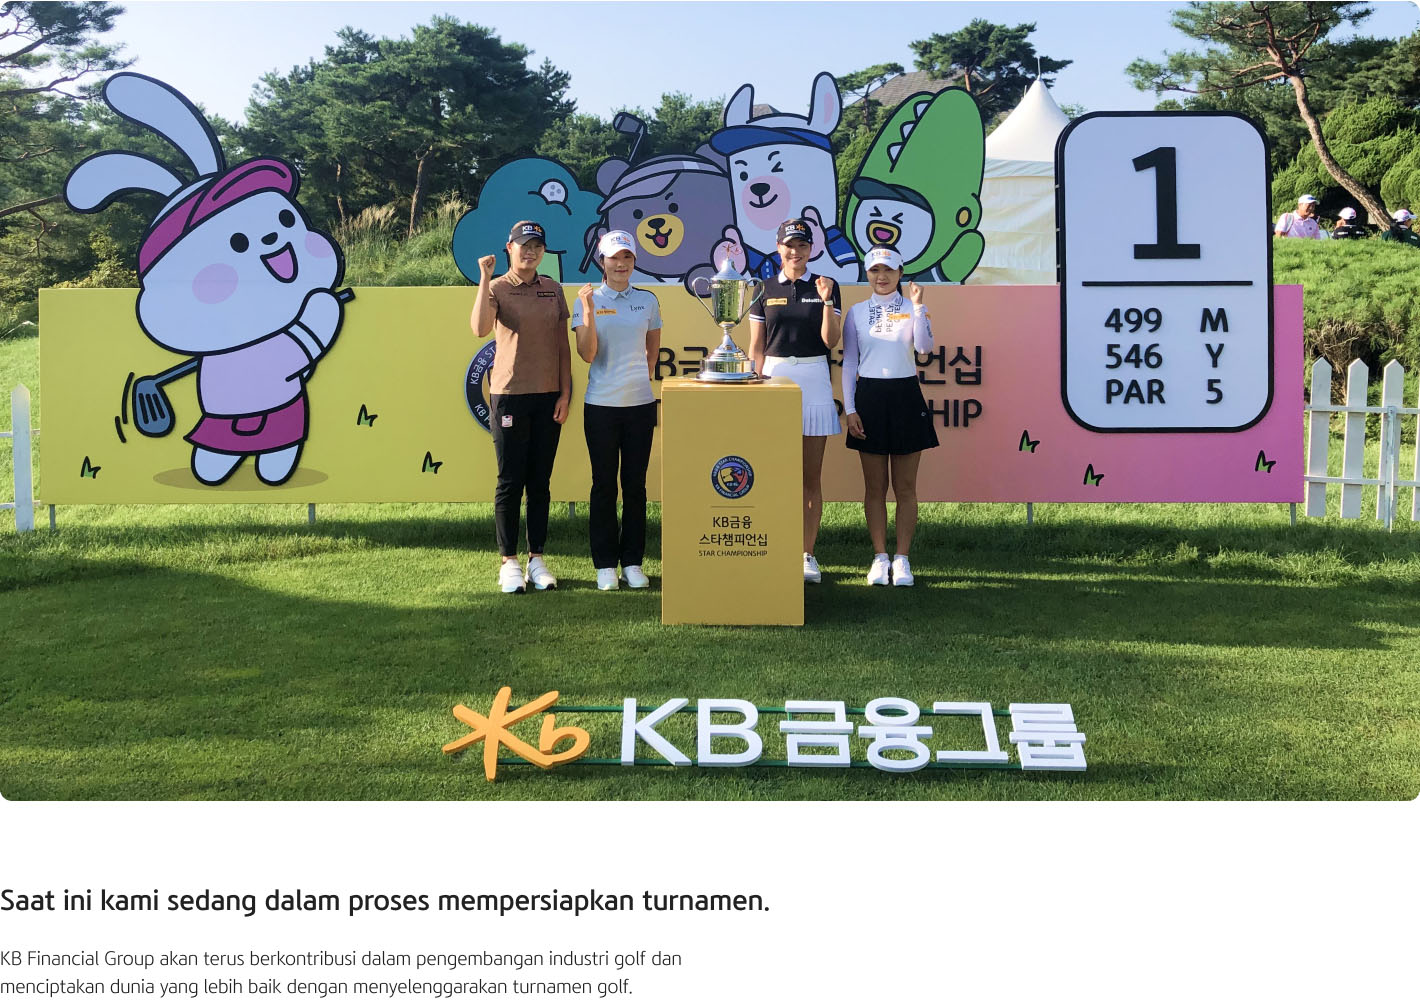 Inilah poster KB Financial Star Championship yang berisi informasi mengenai kompetisi tersebut